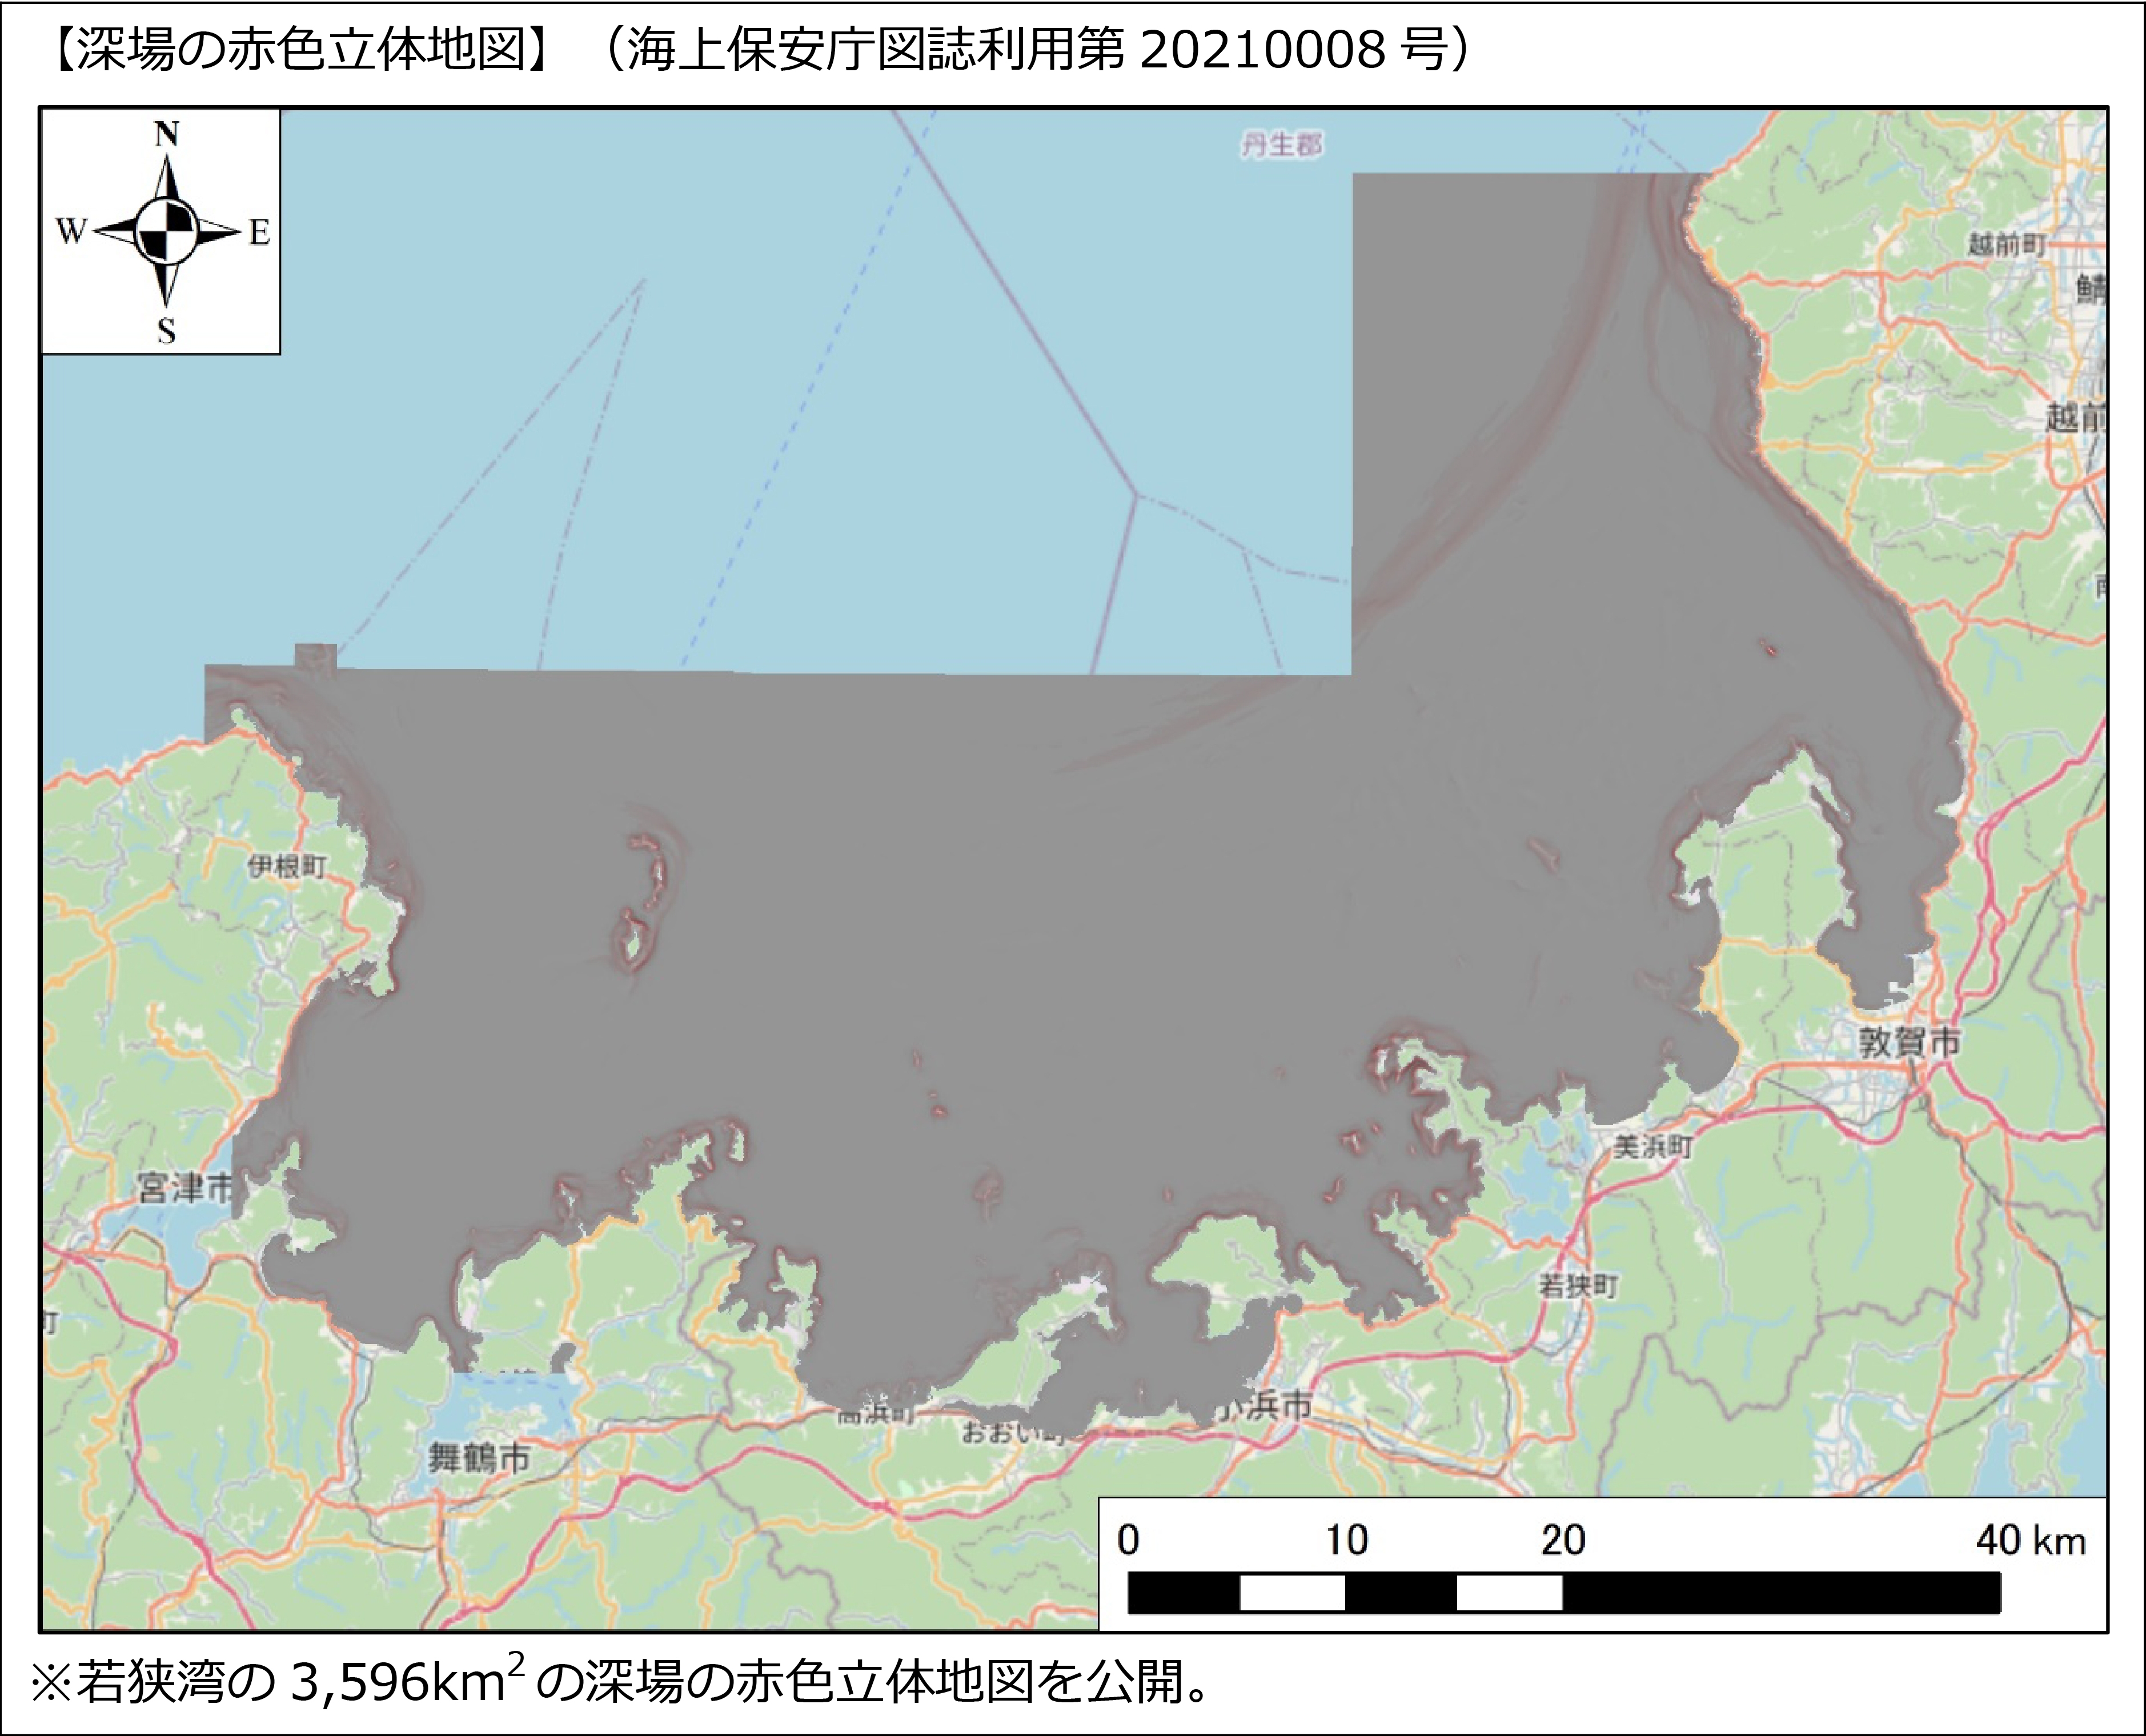 対象エリア拡大 海底地形マップアプリ 釣りドコ に若狭湾の 深場の赤色立体地図 を追加 アジア航測株式会社のプレスリリース